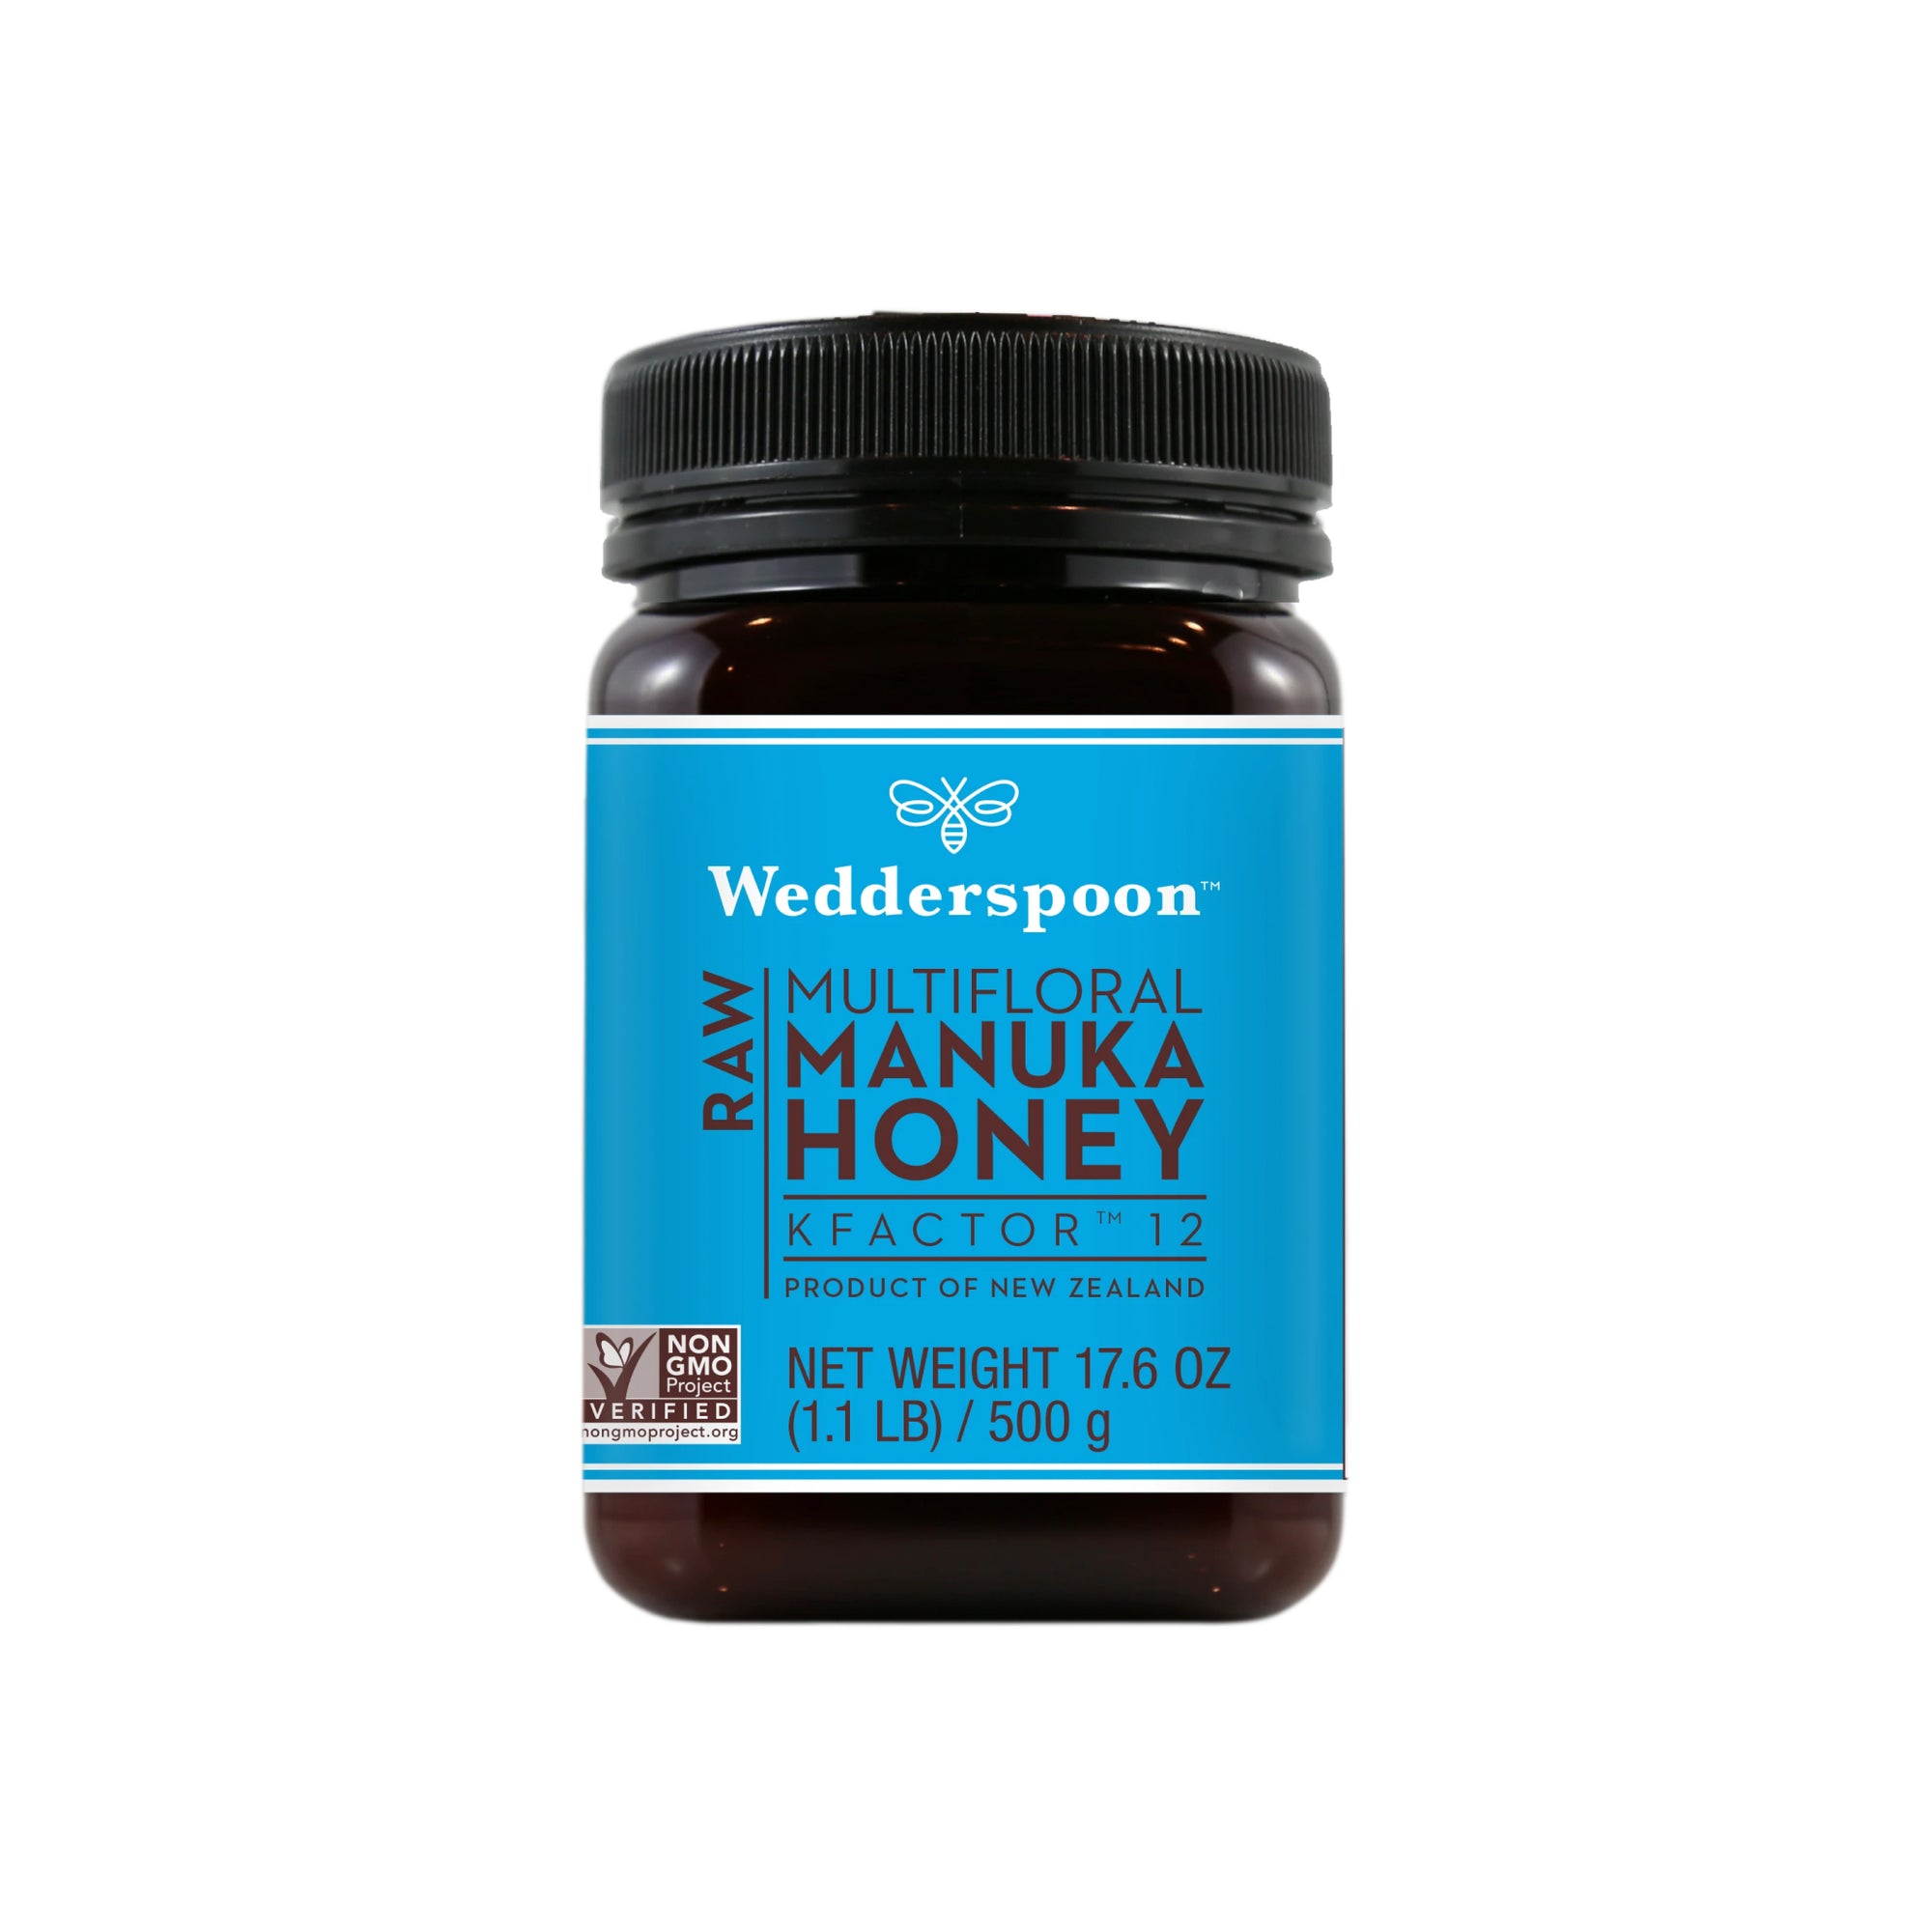 Wedderspoon Raw Multifloral Manuka Honey KFactor 12 500g